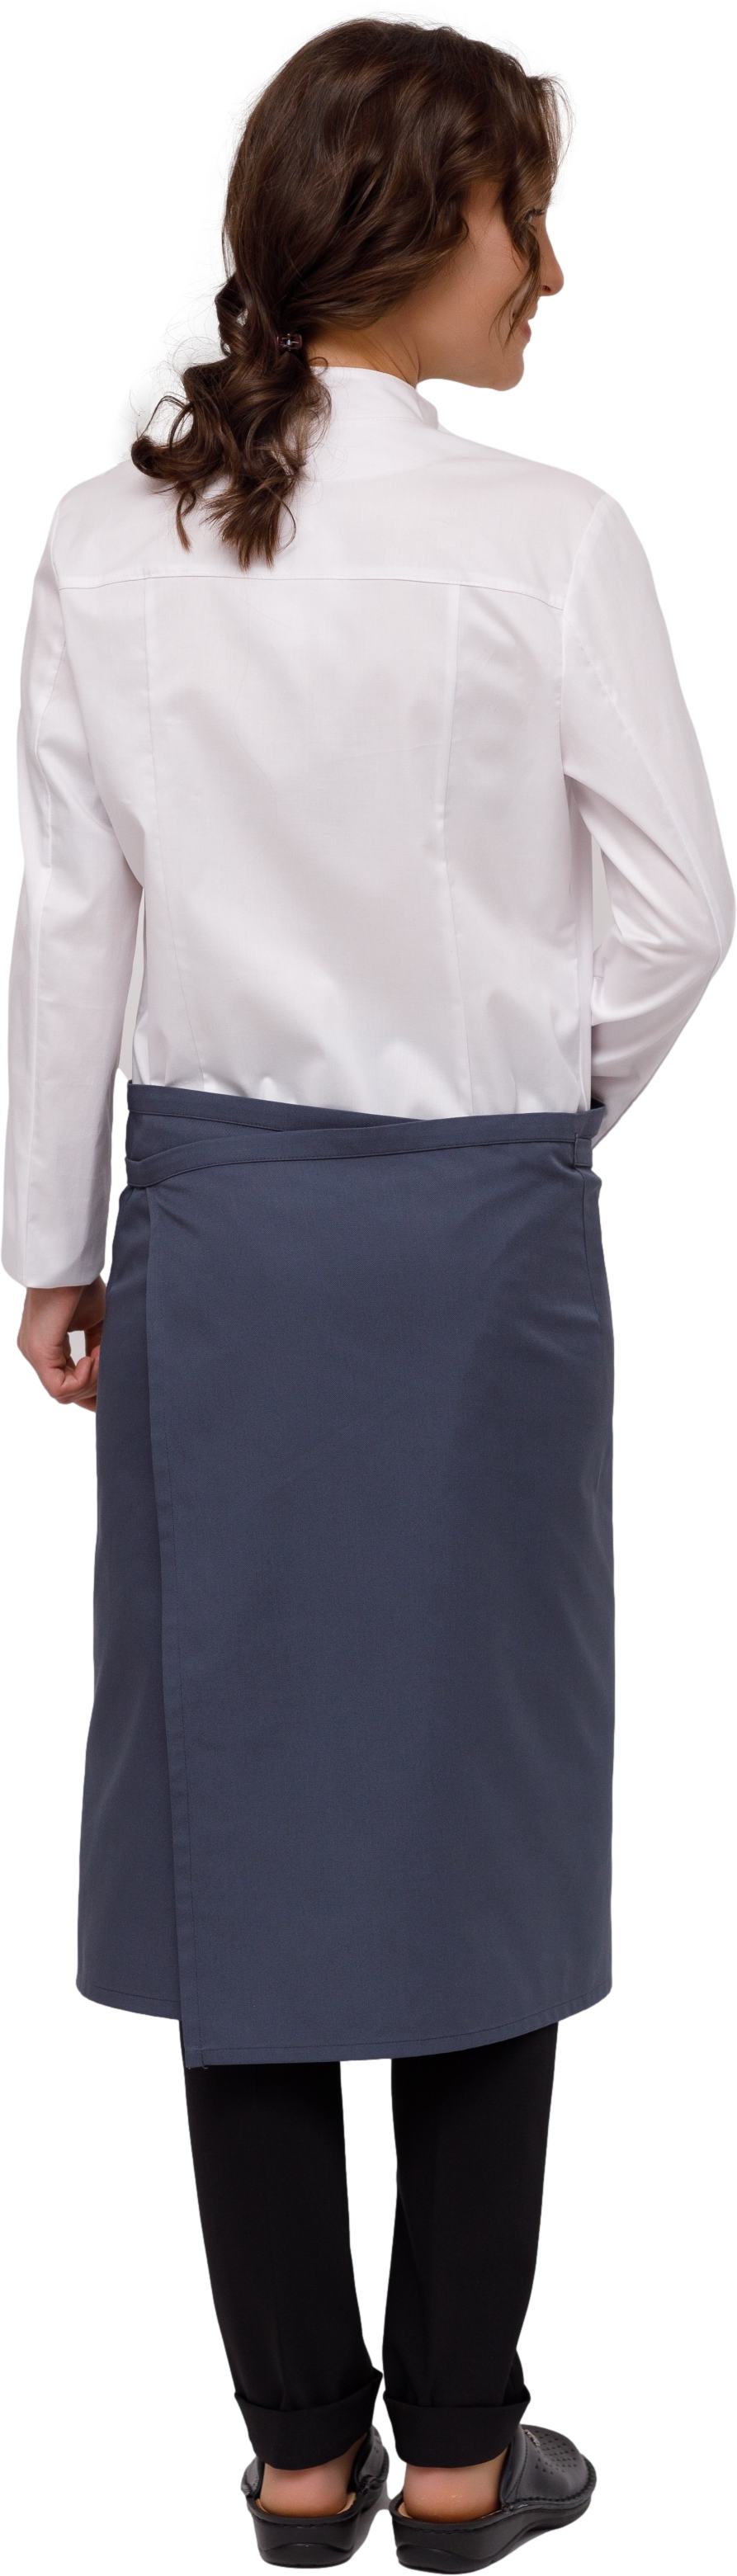 Комплект для повара JACSON - китель / фартук / брюки женский белый 2